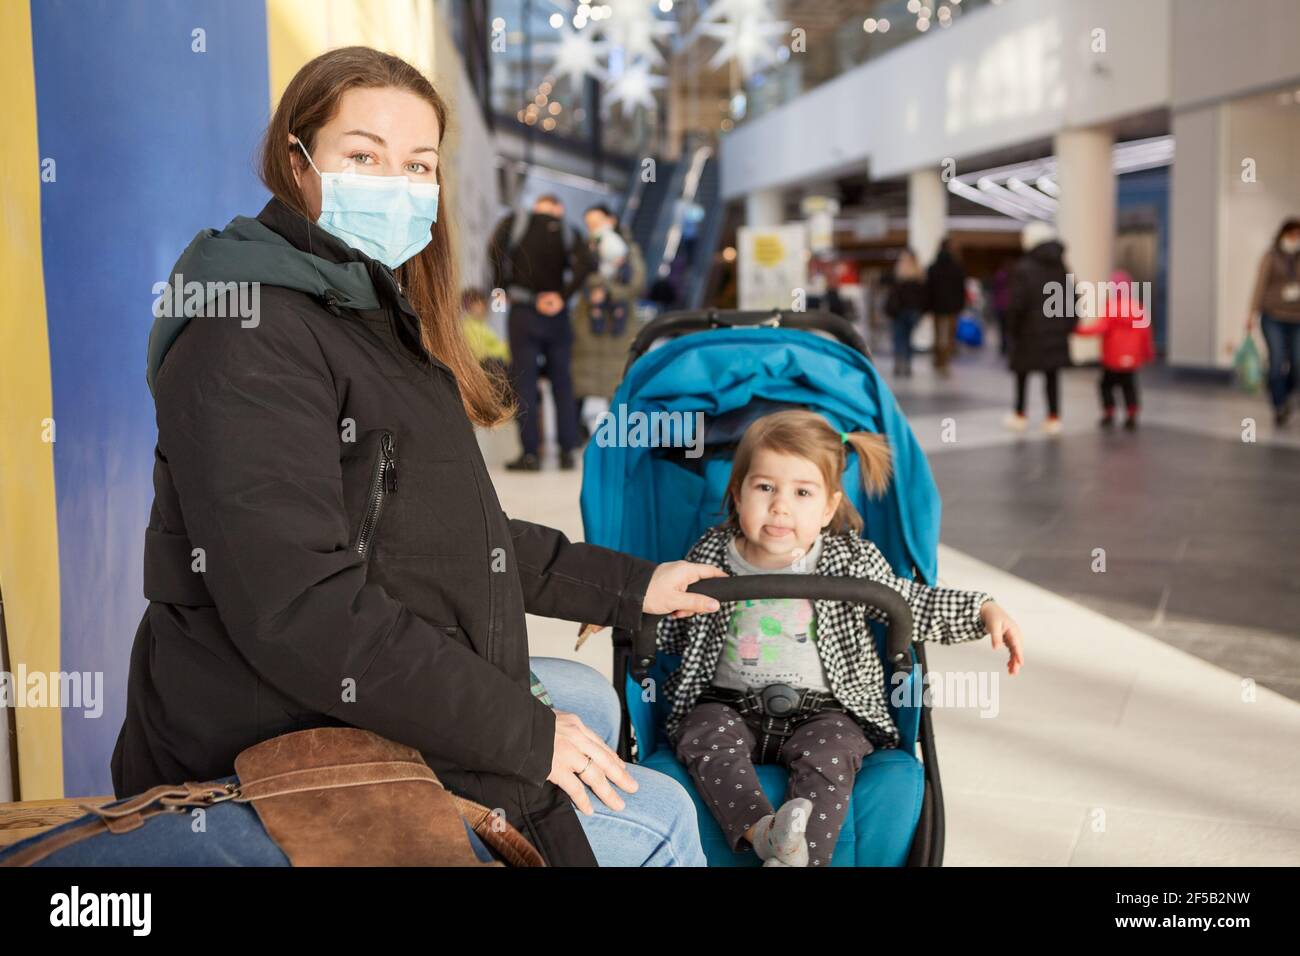 Madre caucasica che riposa con sua figlia seduta in carrozza per bambini, famiglia che cammina in un centro commerciale, donna adulta che indossa la maschera facciale Foto Stock